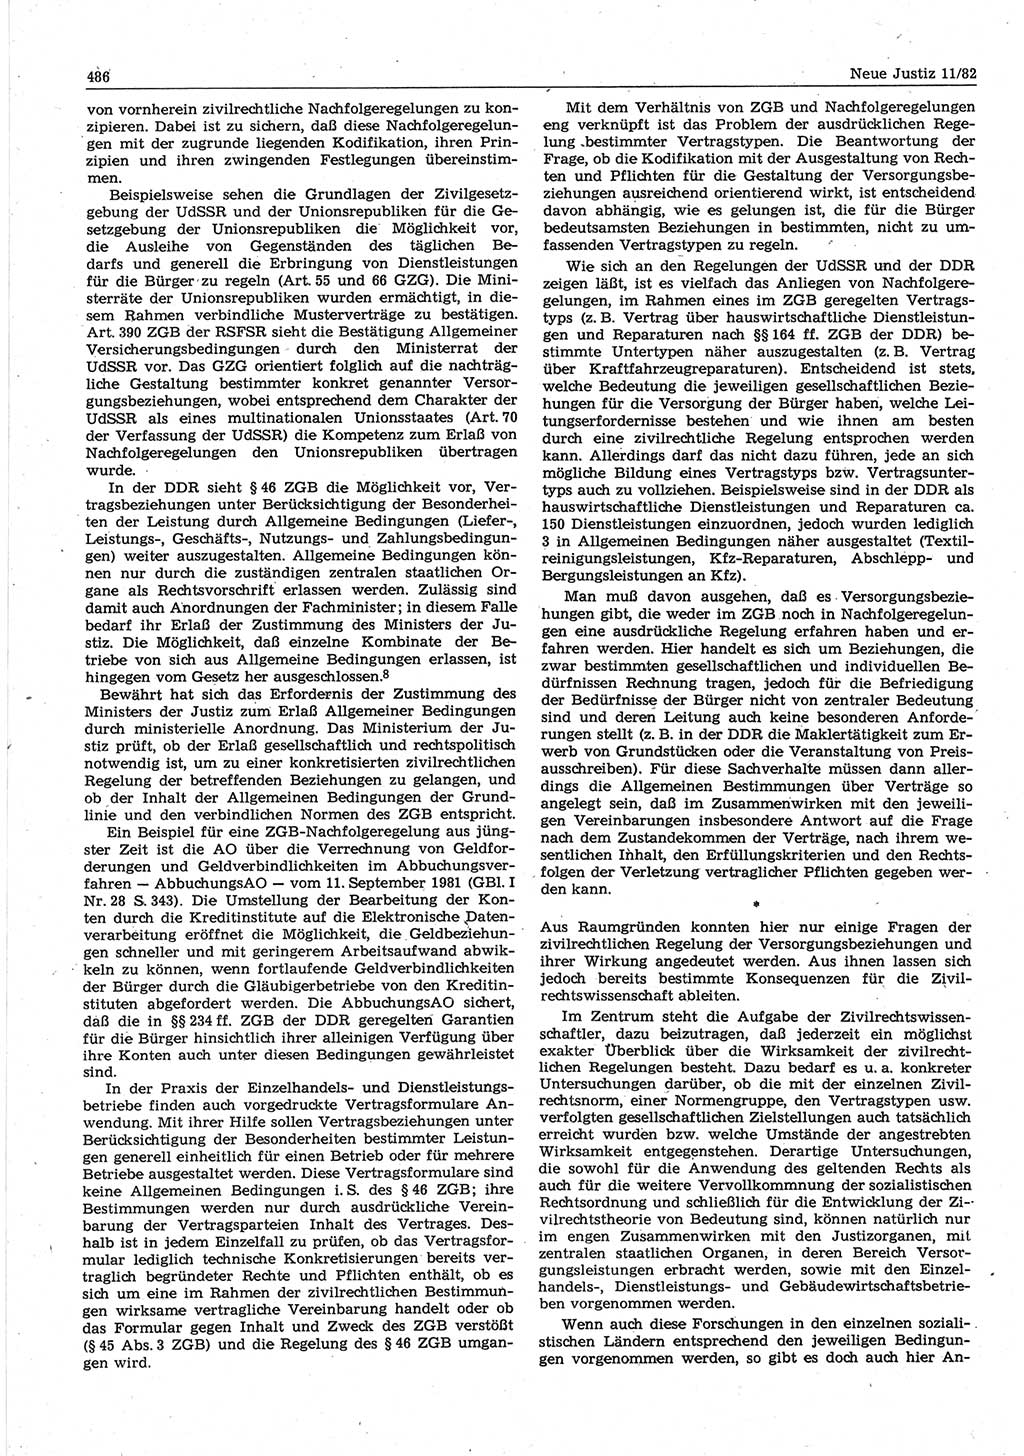 Neue Justiz (NJ), Zeitschrift für sozialistisches Recht und Gesetzlichkeit [Deutsche Demokratische Republik (DDR)], 36. Jahrgang 1982, Seite 486 (NJ DDR 1982, S. 486)